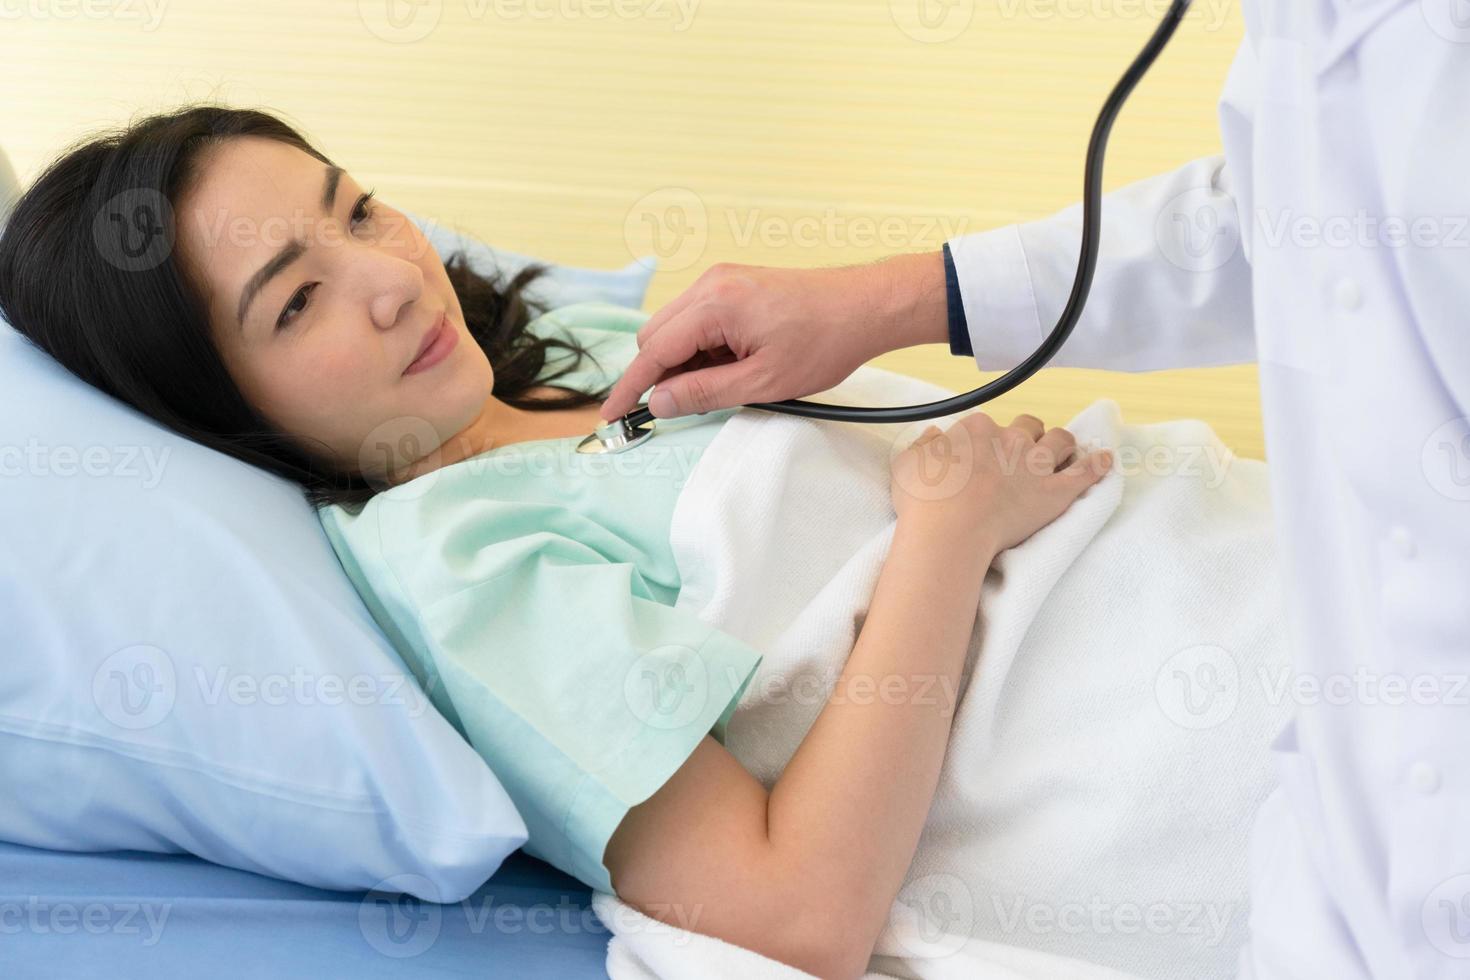 médecin utilisant un stéthoscope pour écouter les sons pulmonaires et cardiaques d'une femme asiatique malade et allongée dans un lit d'hôpital. concept de soins de santé et médical photo